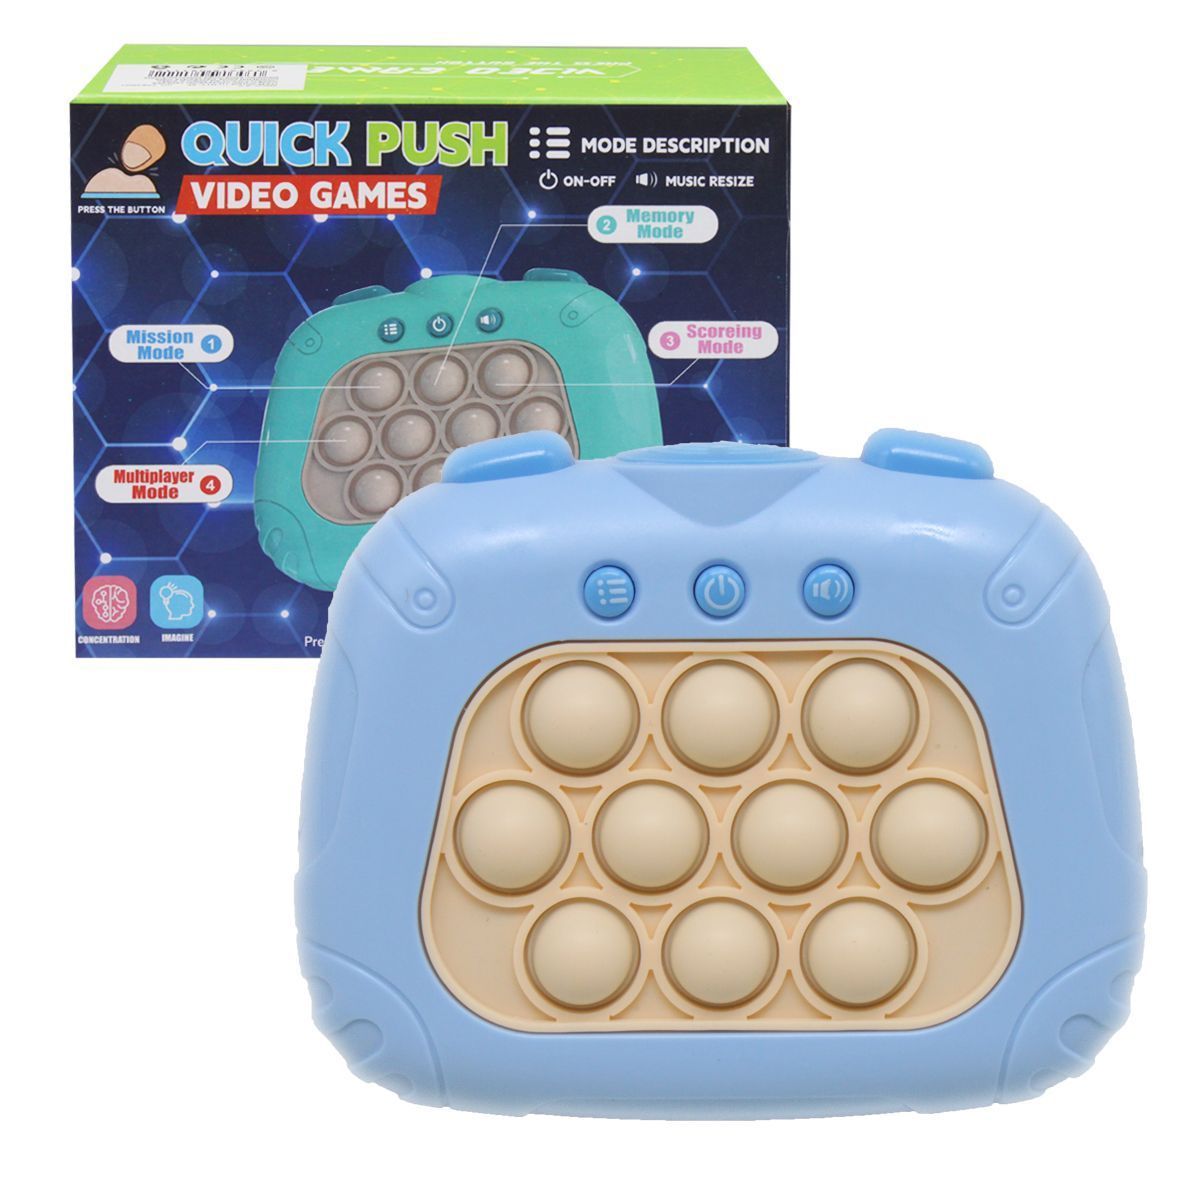 Уцінка.  Електронна гра "Quick push", блакитний переплутані контакти в відсіку для батарейок